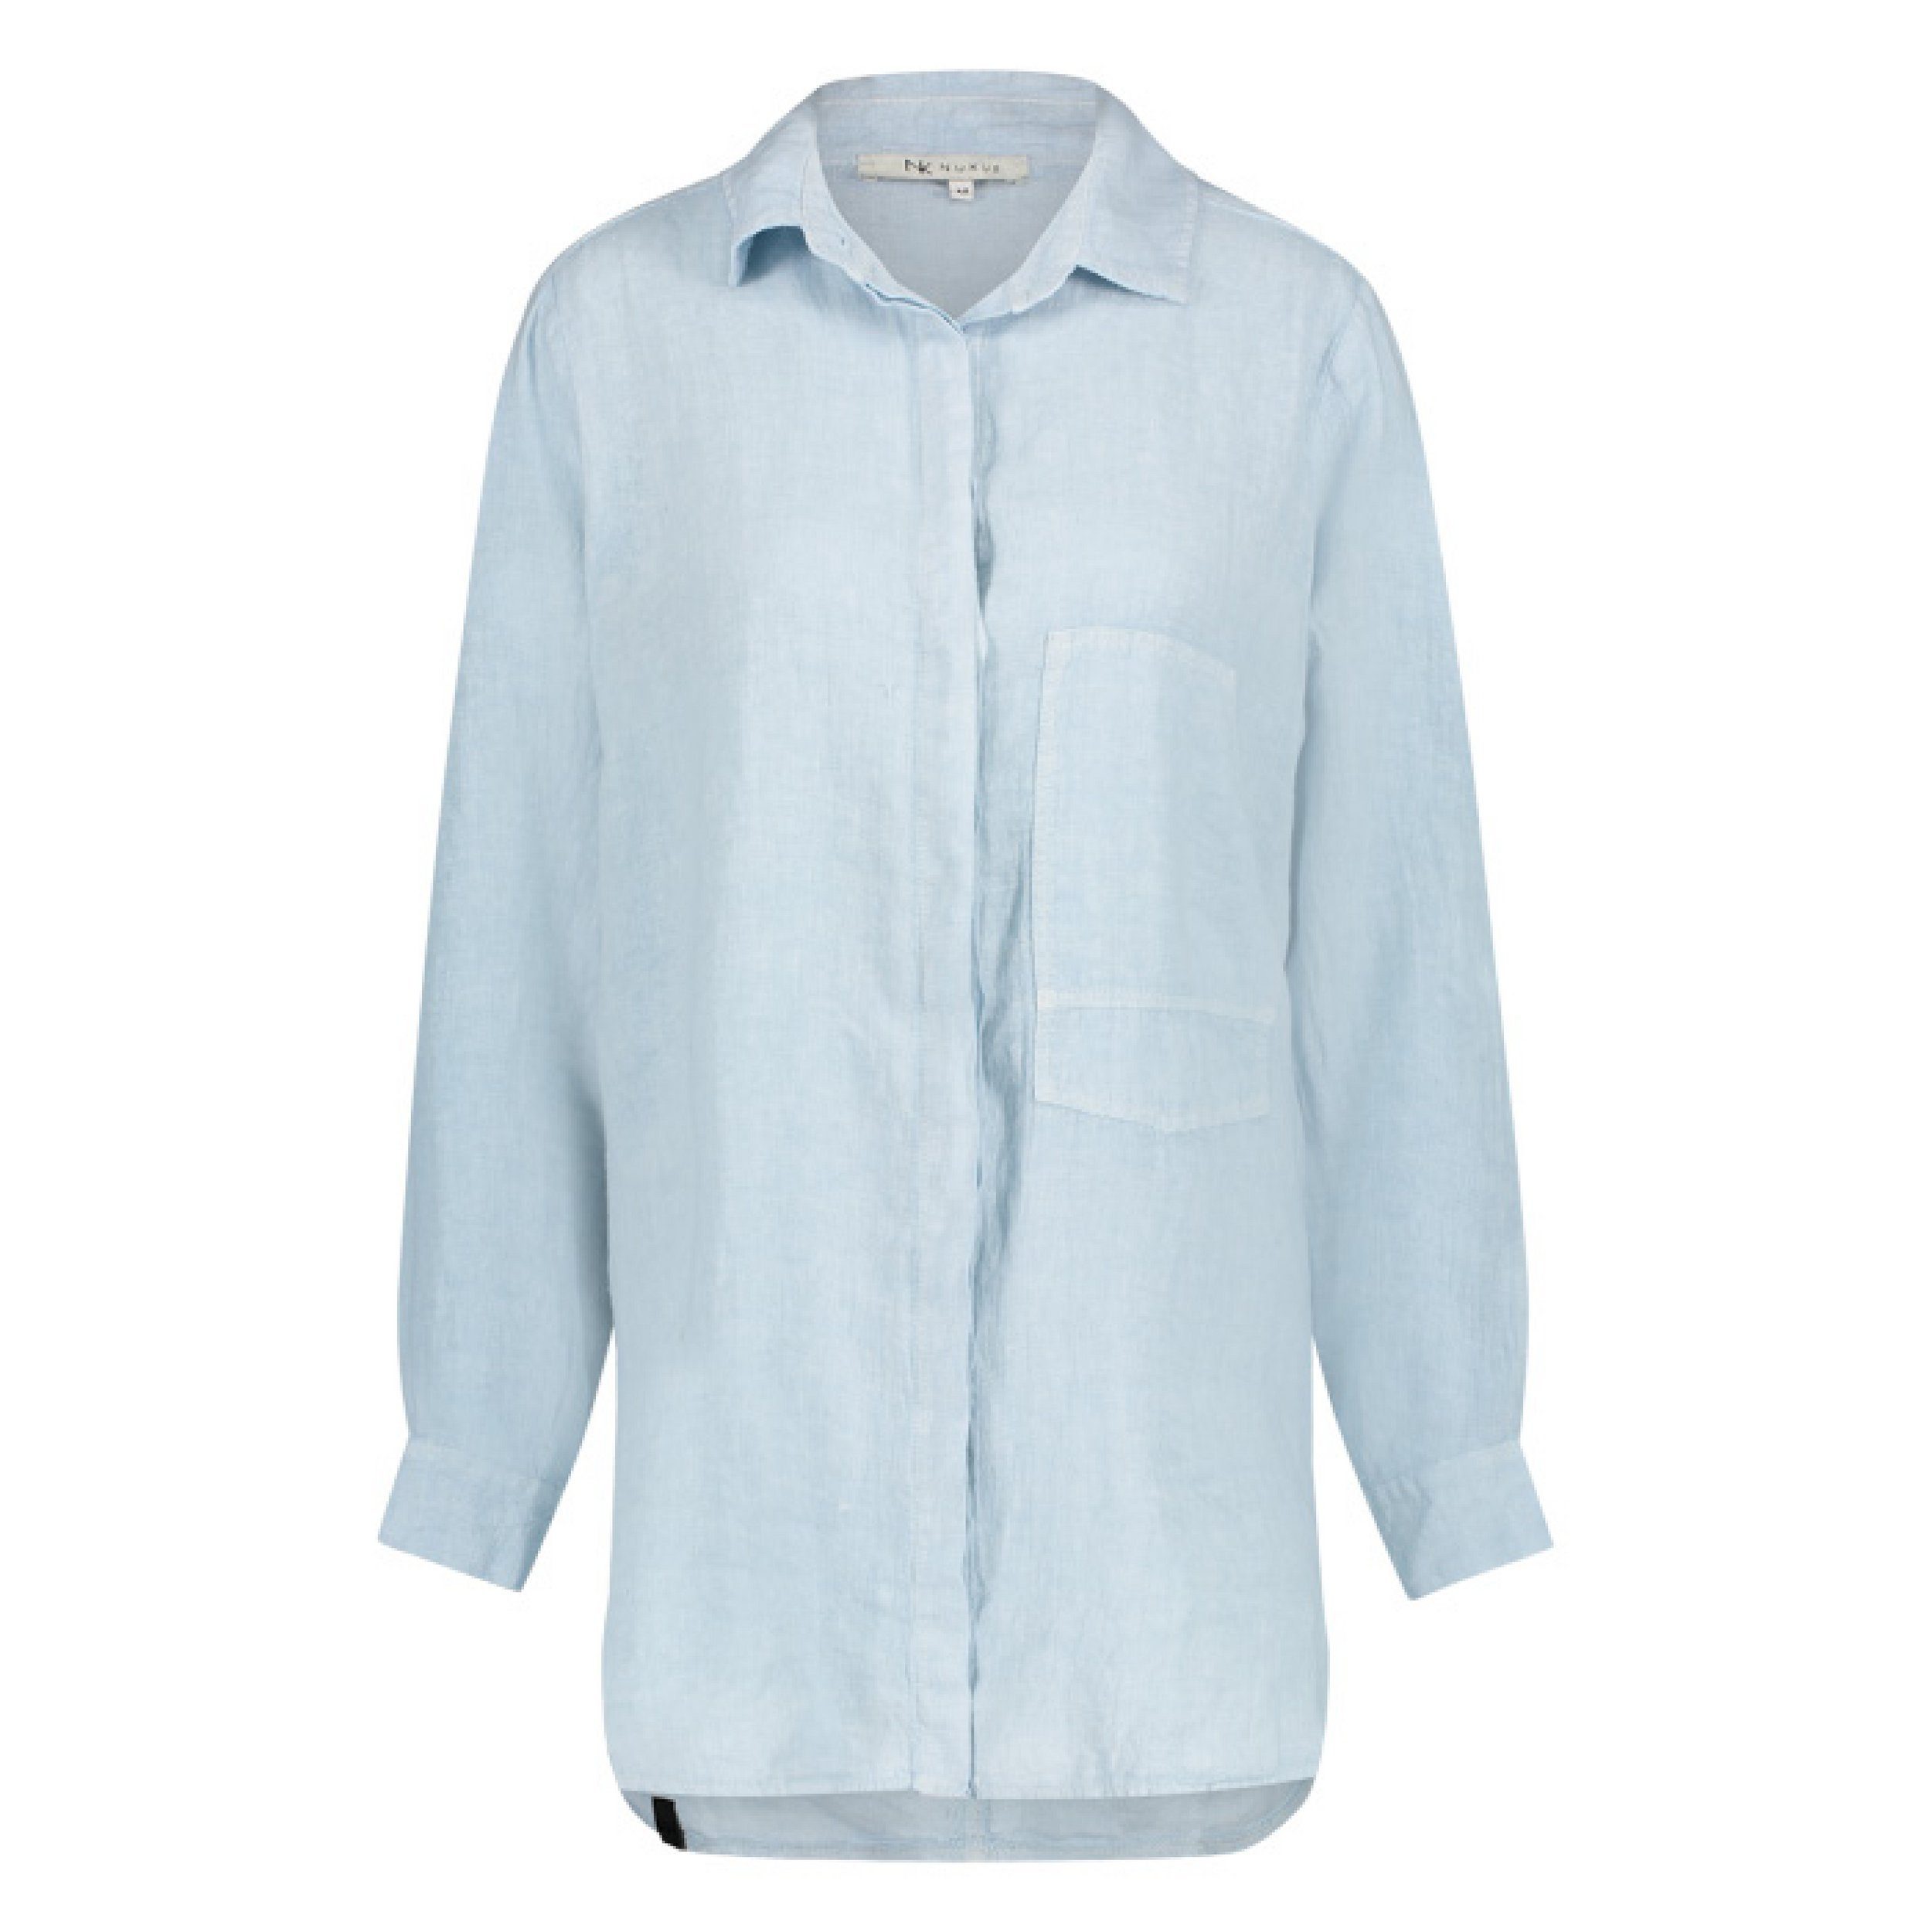 Nukus Hemdbluse »Nukus Damen Hemd Bluse Lieke Oversize Leinen Hemdbluse  Weiß White Blue Hellblau Babyblau« (1-tlg) online kaufen | OTTO